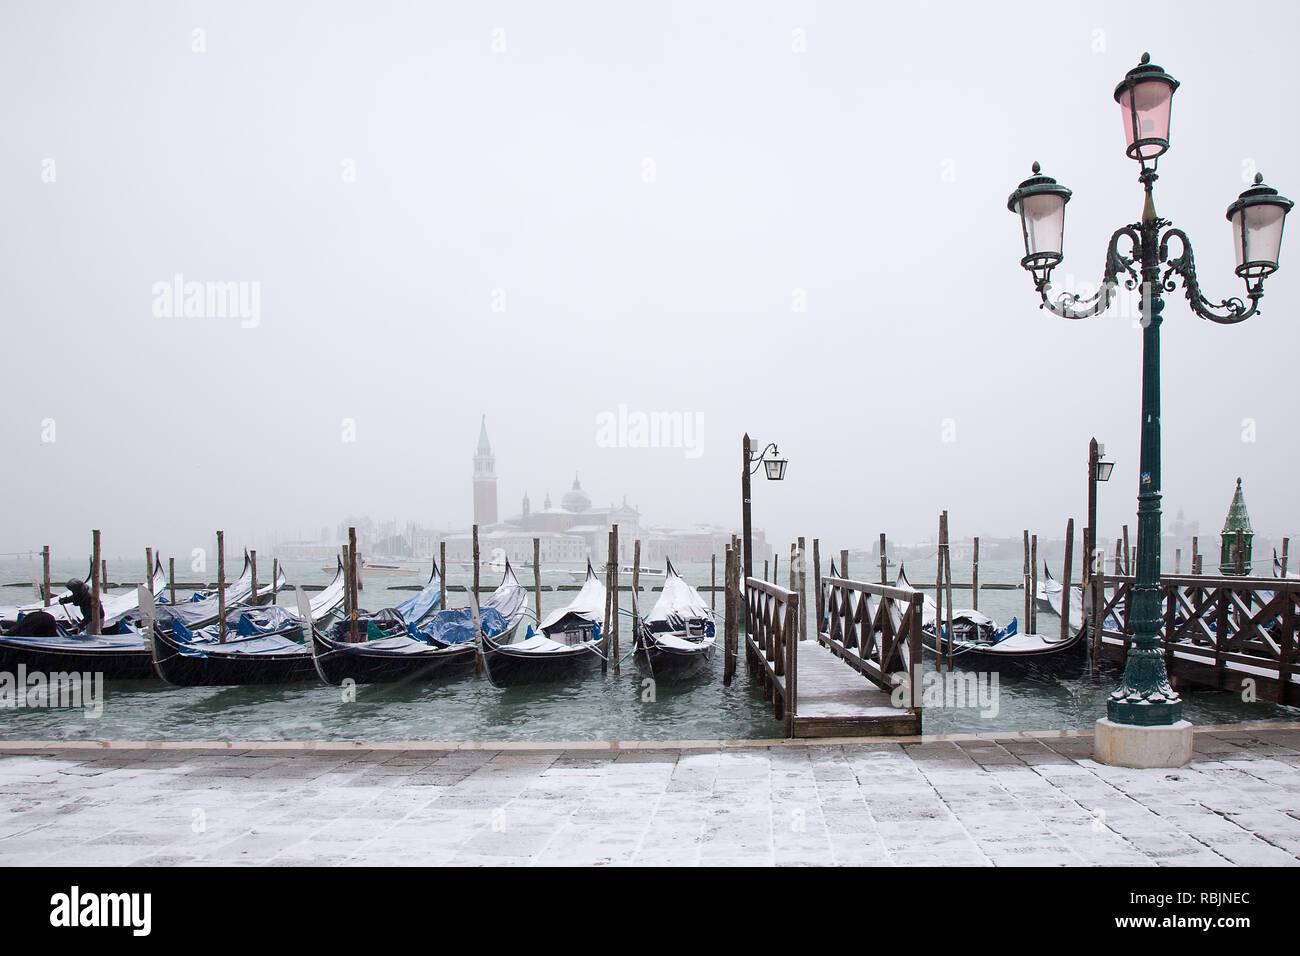 Il neige à Venise Venise traditionnel avec gondoles sur la place St Marc Banque D'Images